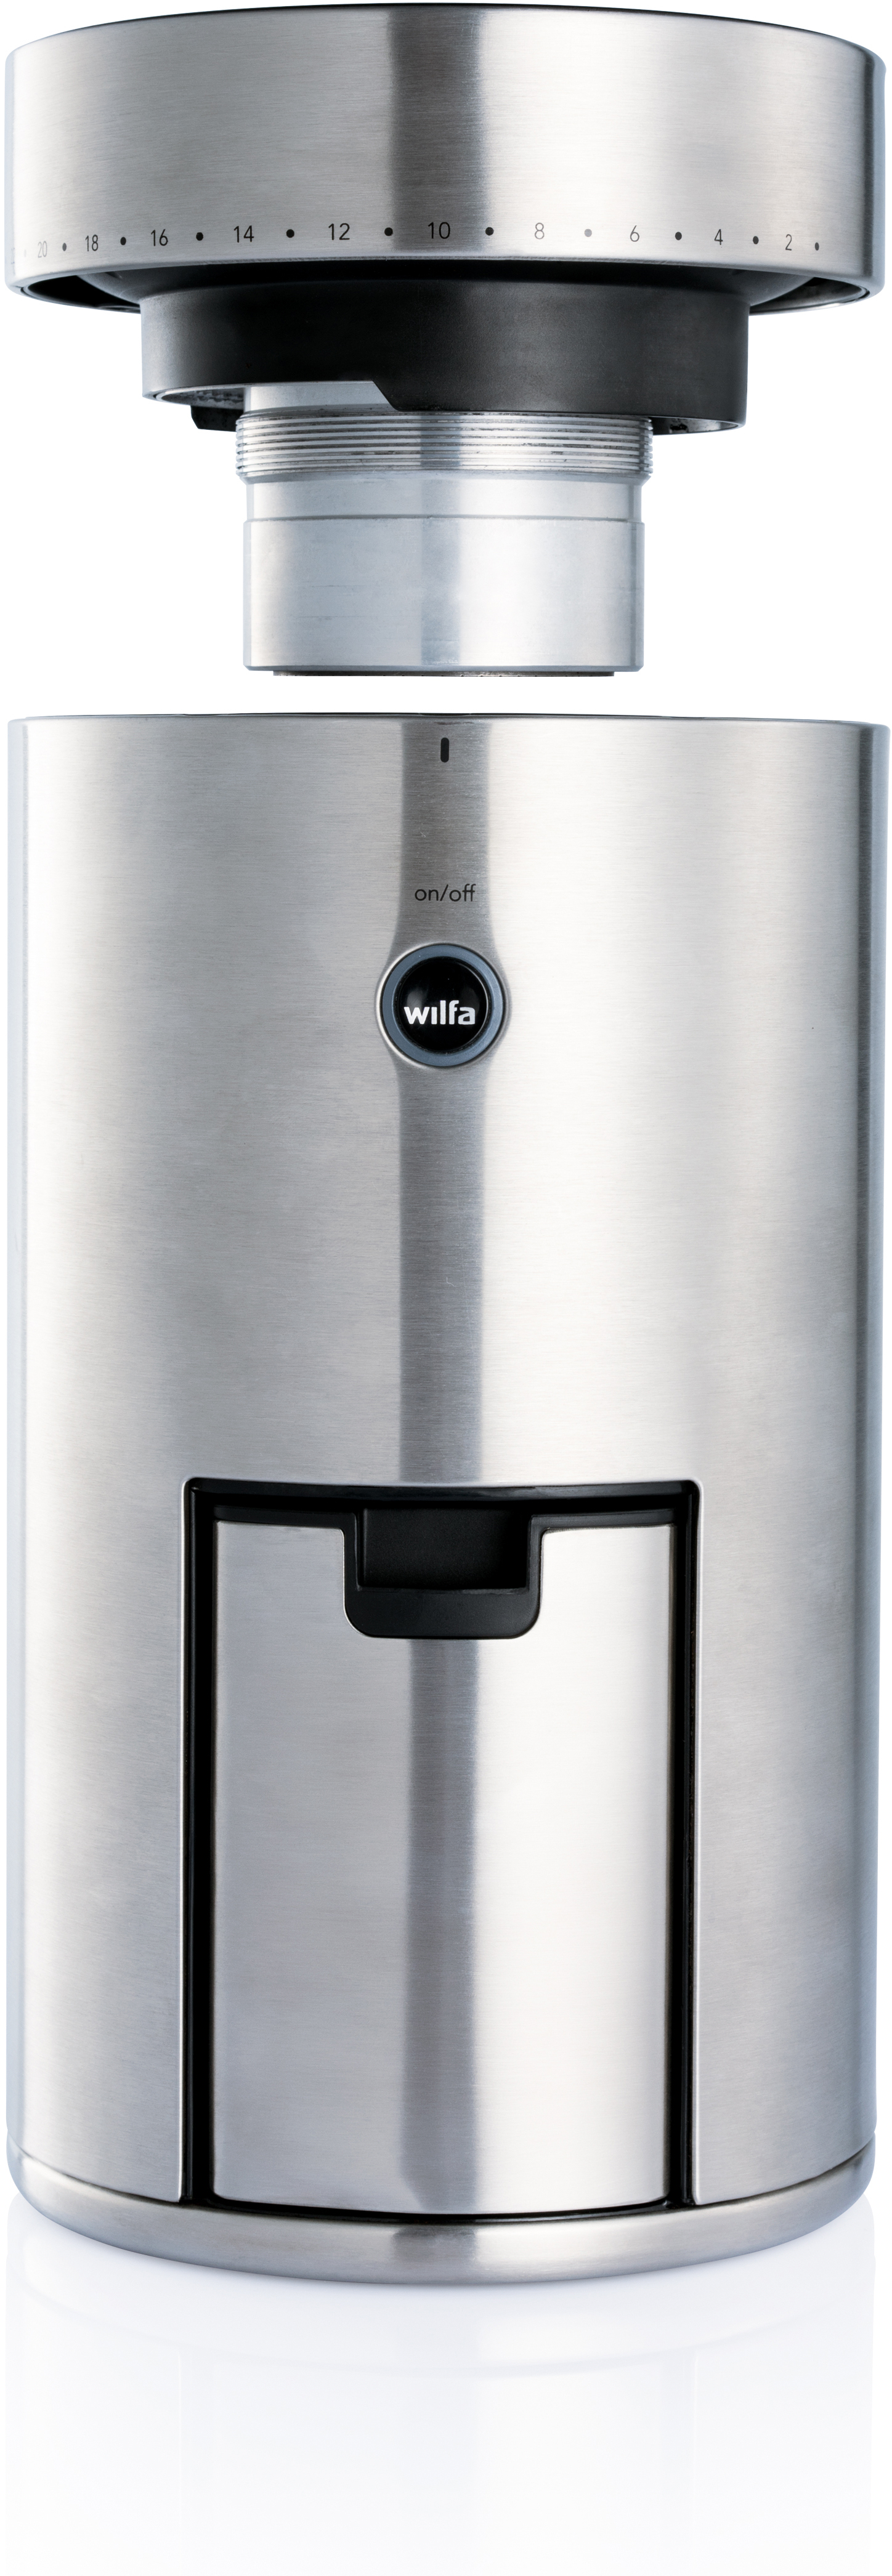 WILFA Svart Uniform WSFB-100S Kaffeemühle Silber Watt, mm Langlebiges 41 (80 Mahlgrads) Einstellungen großes des 58 aus Edelstahl, Scheibenmahlwerk